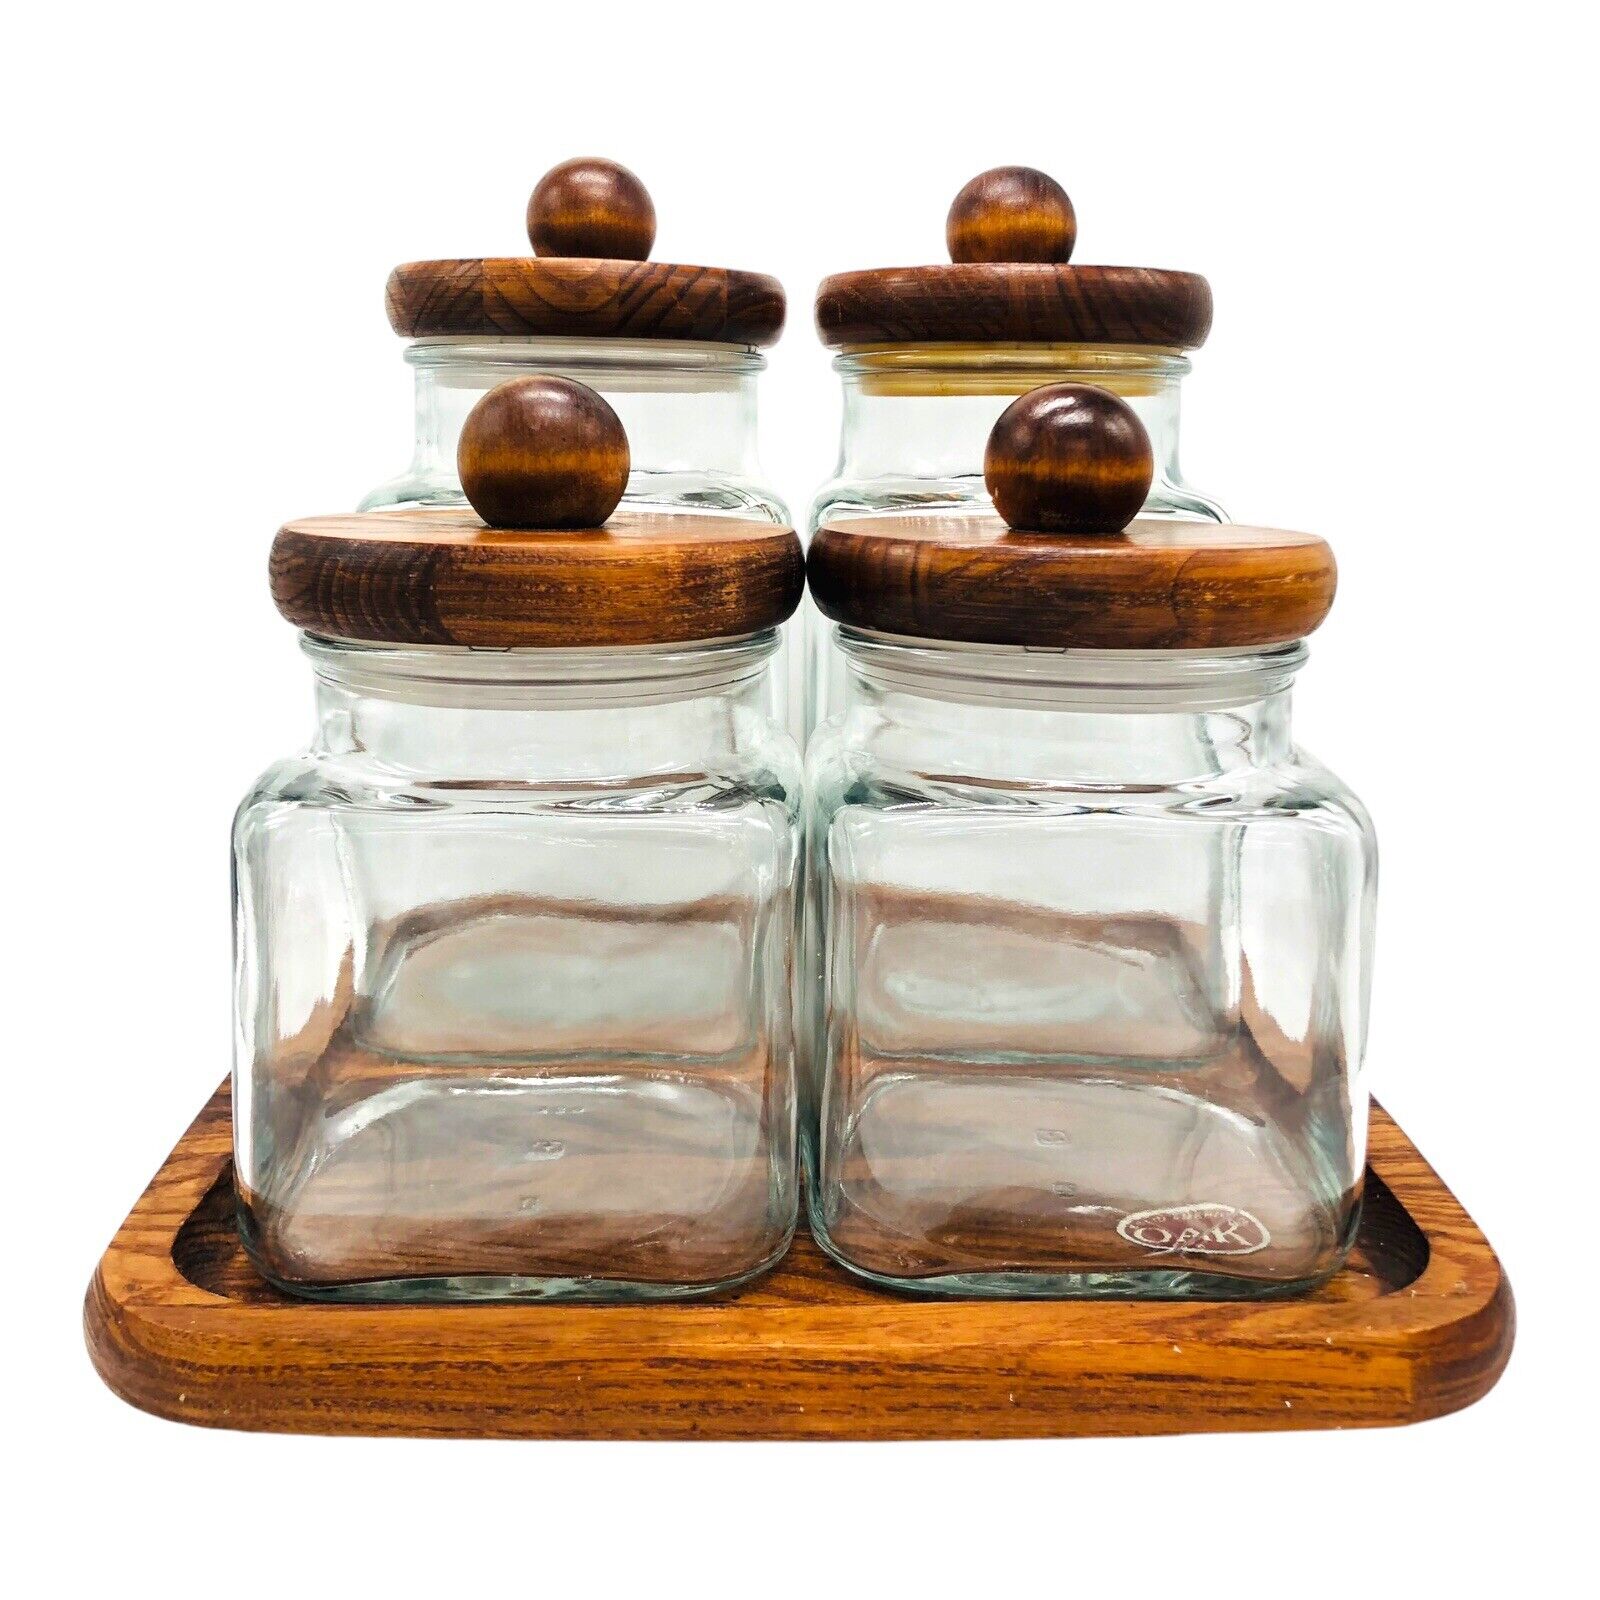 VTG Anchor Hocking Glass Jar Cannister Lazy Susan Oak Wood Lid Ball Knob 9pc Set